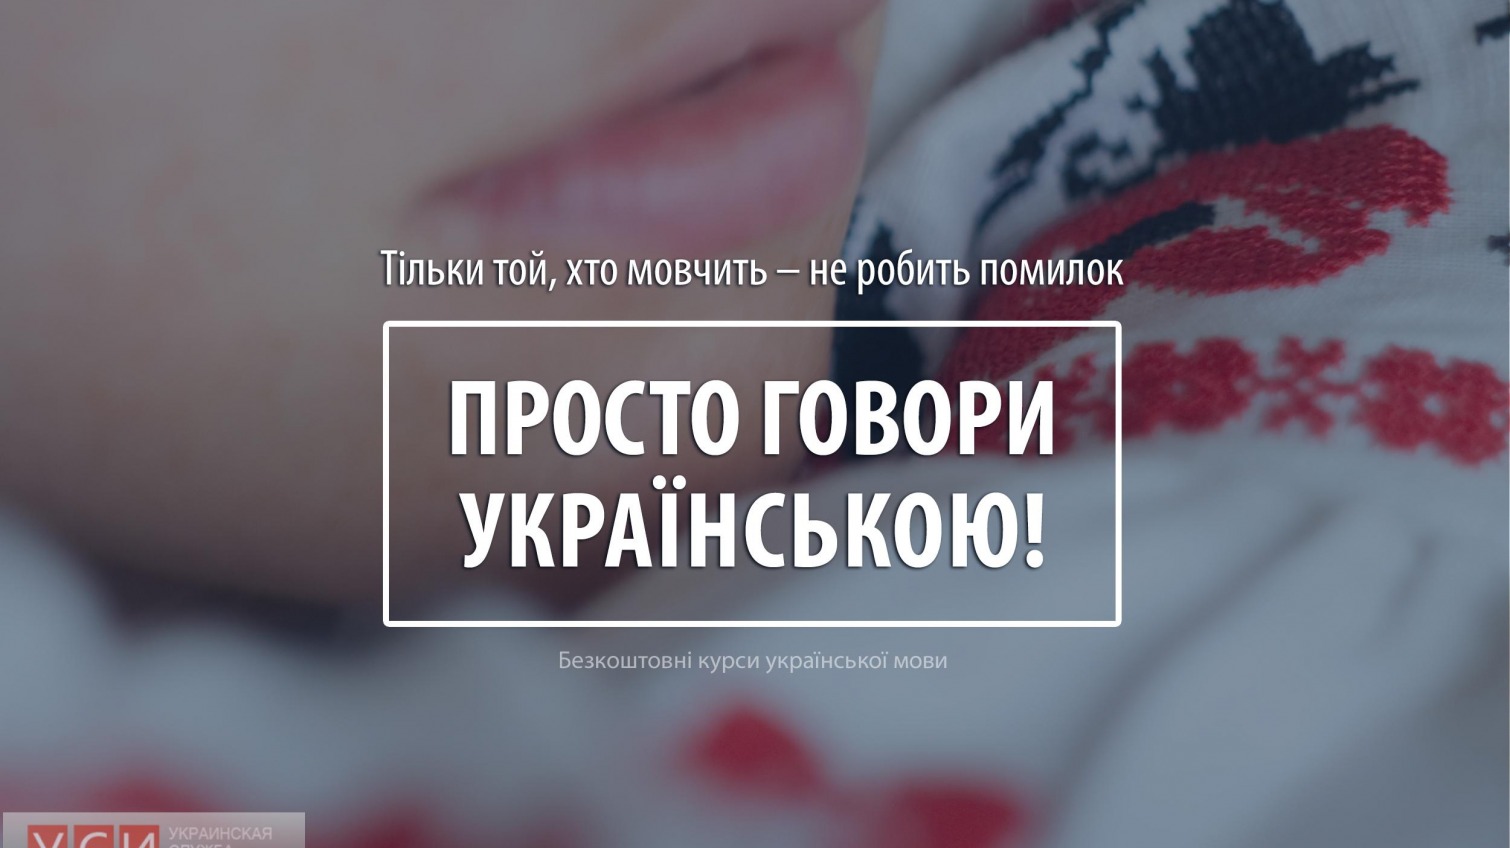 В Одессе запустили бесплатные курсы украинского языка «фото»